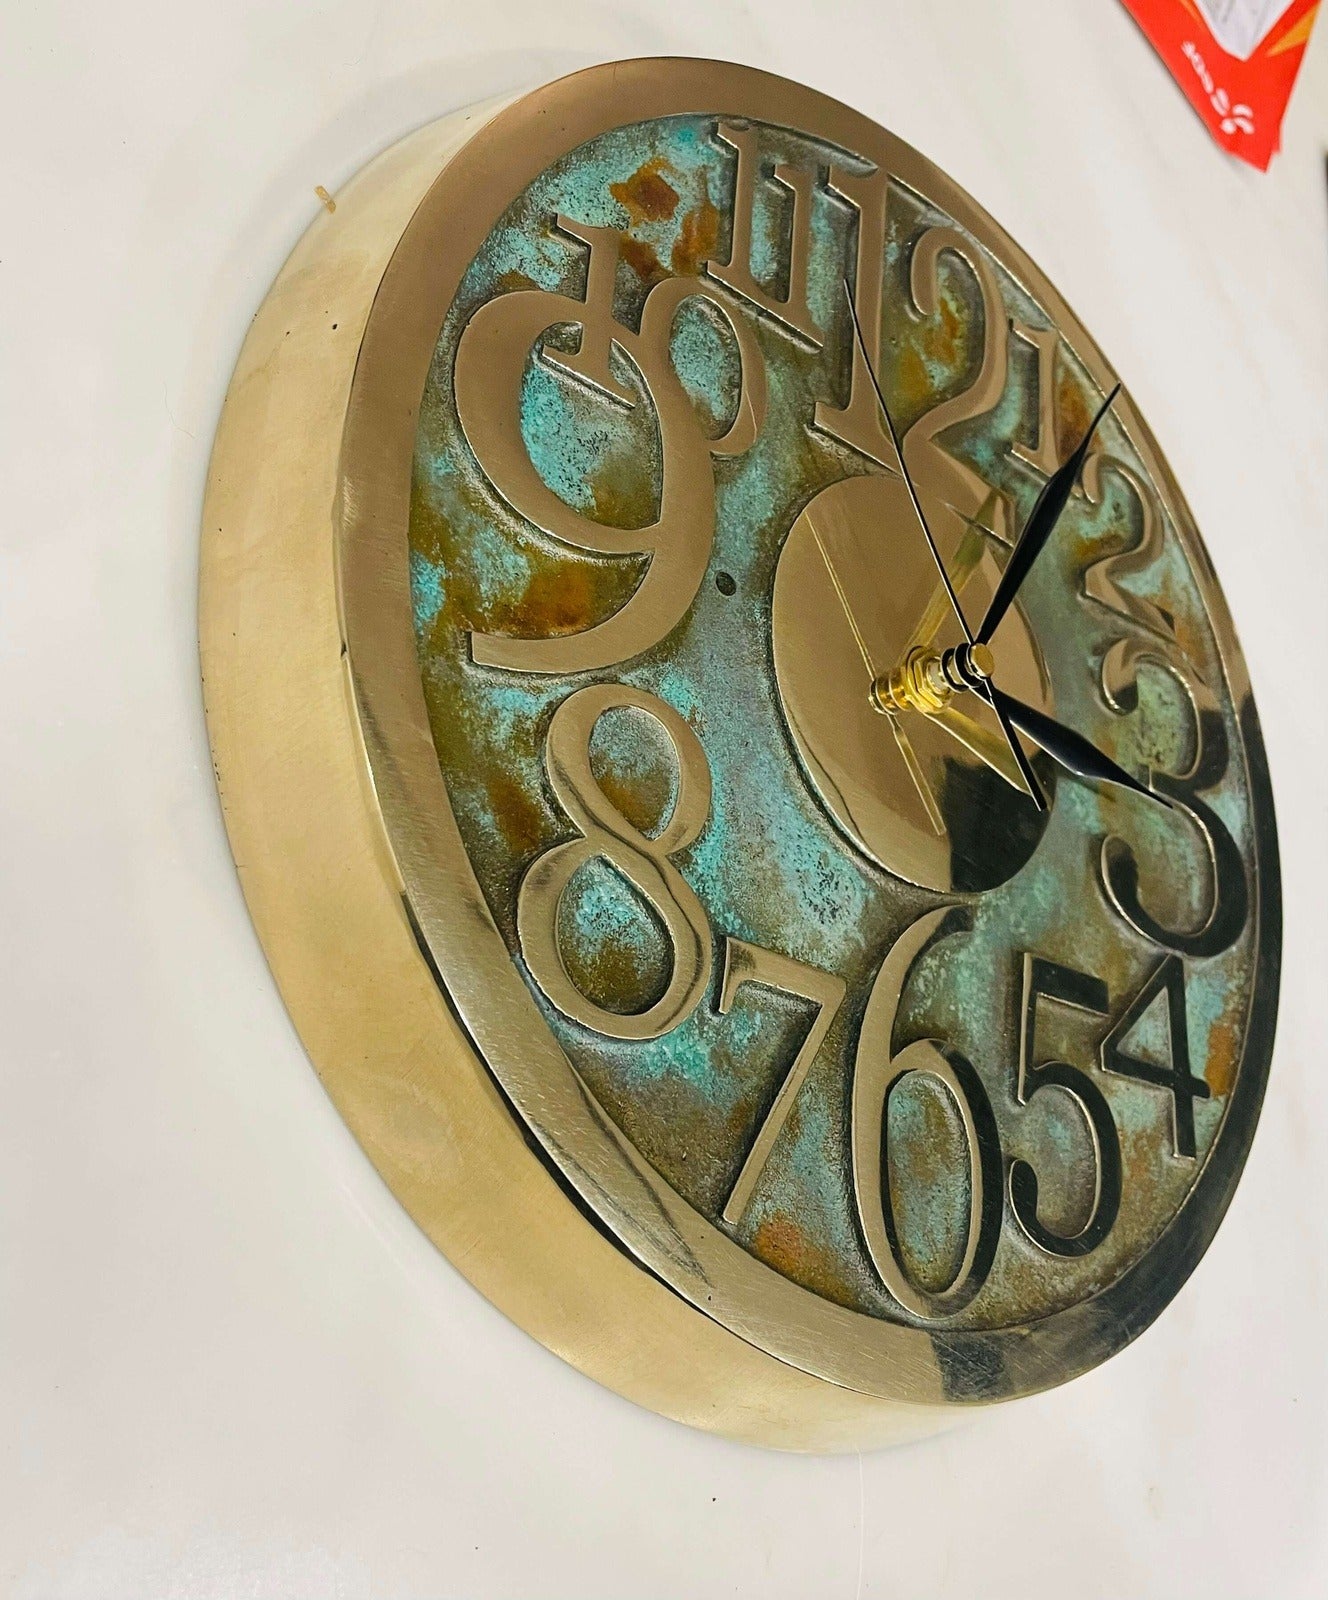 bronze clock